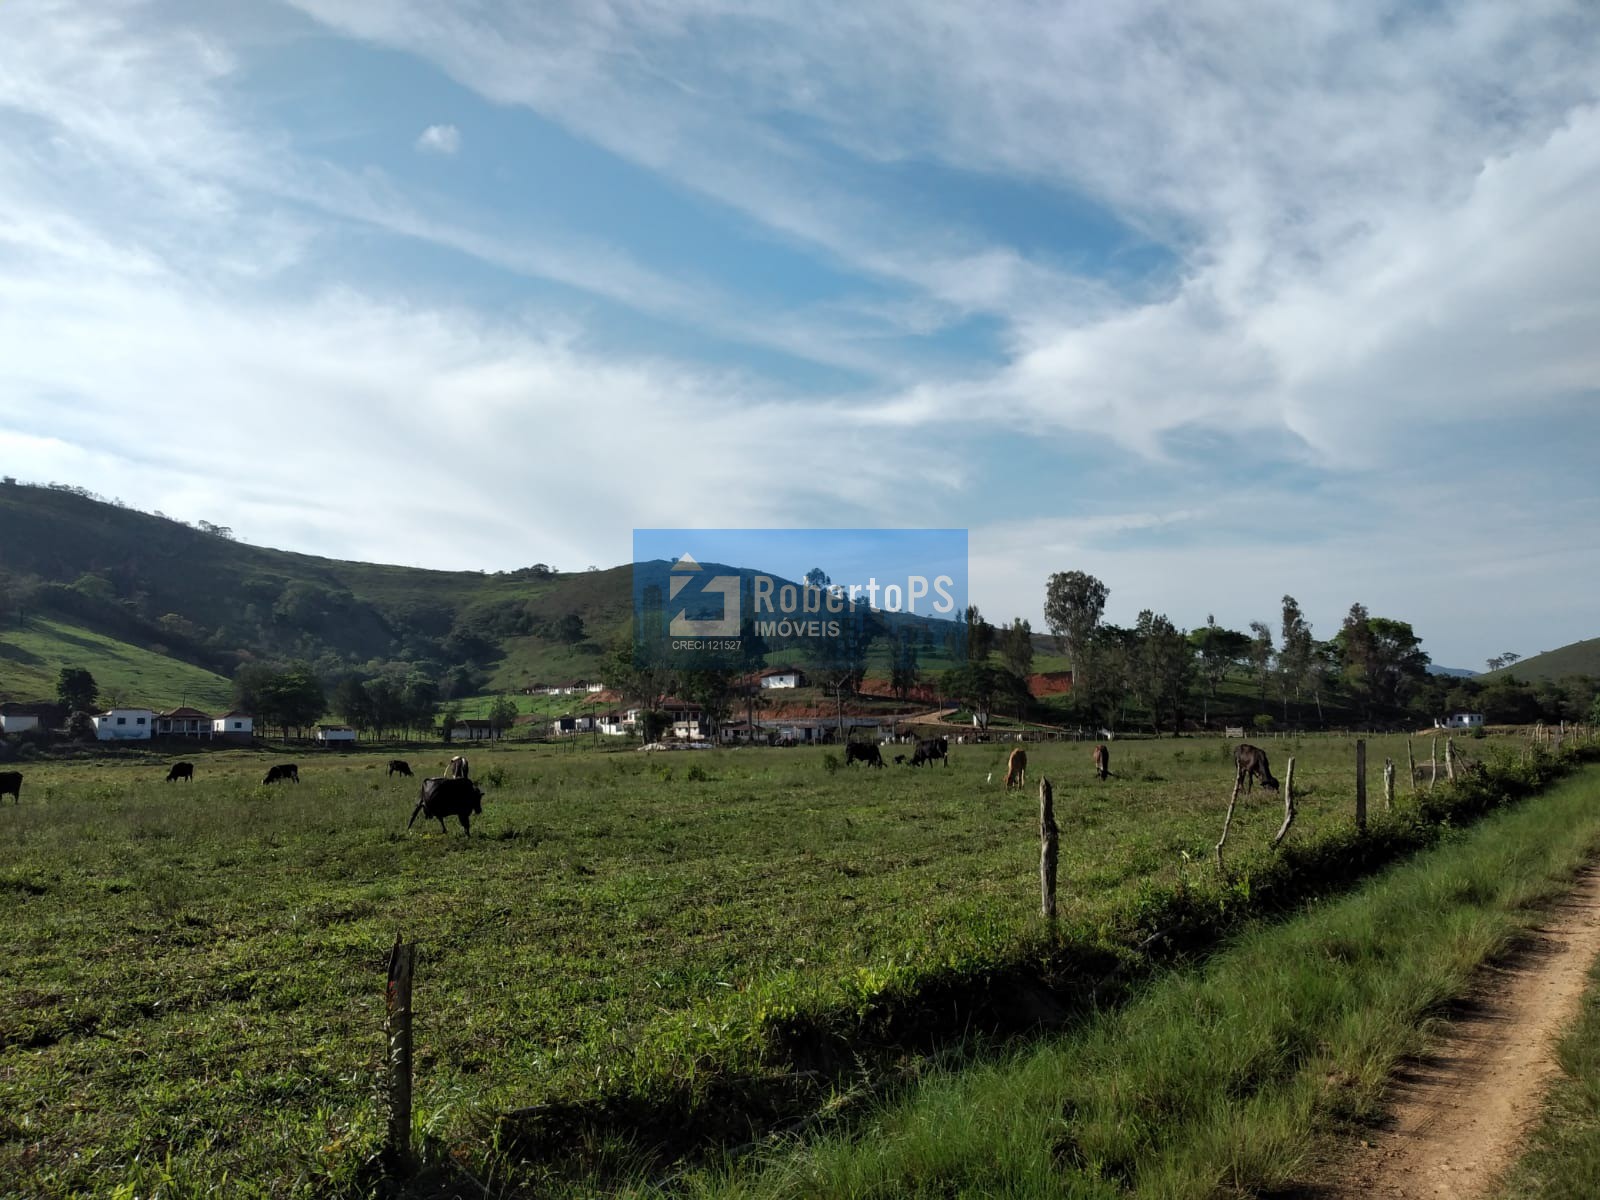 Fazenda em Cruzília a  7 km da rodovia  com 245 hectares   para pecuária  sendo  área de plantio 60 ha  e  faixa de 100 ha tratorável